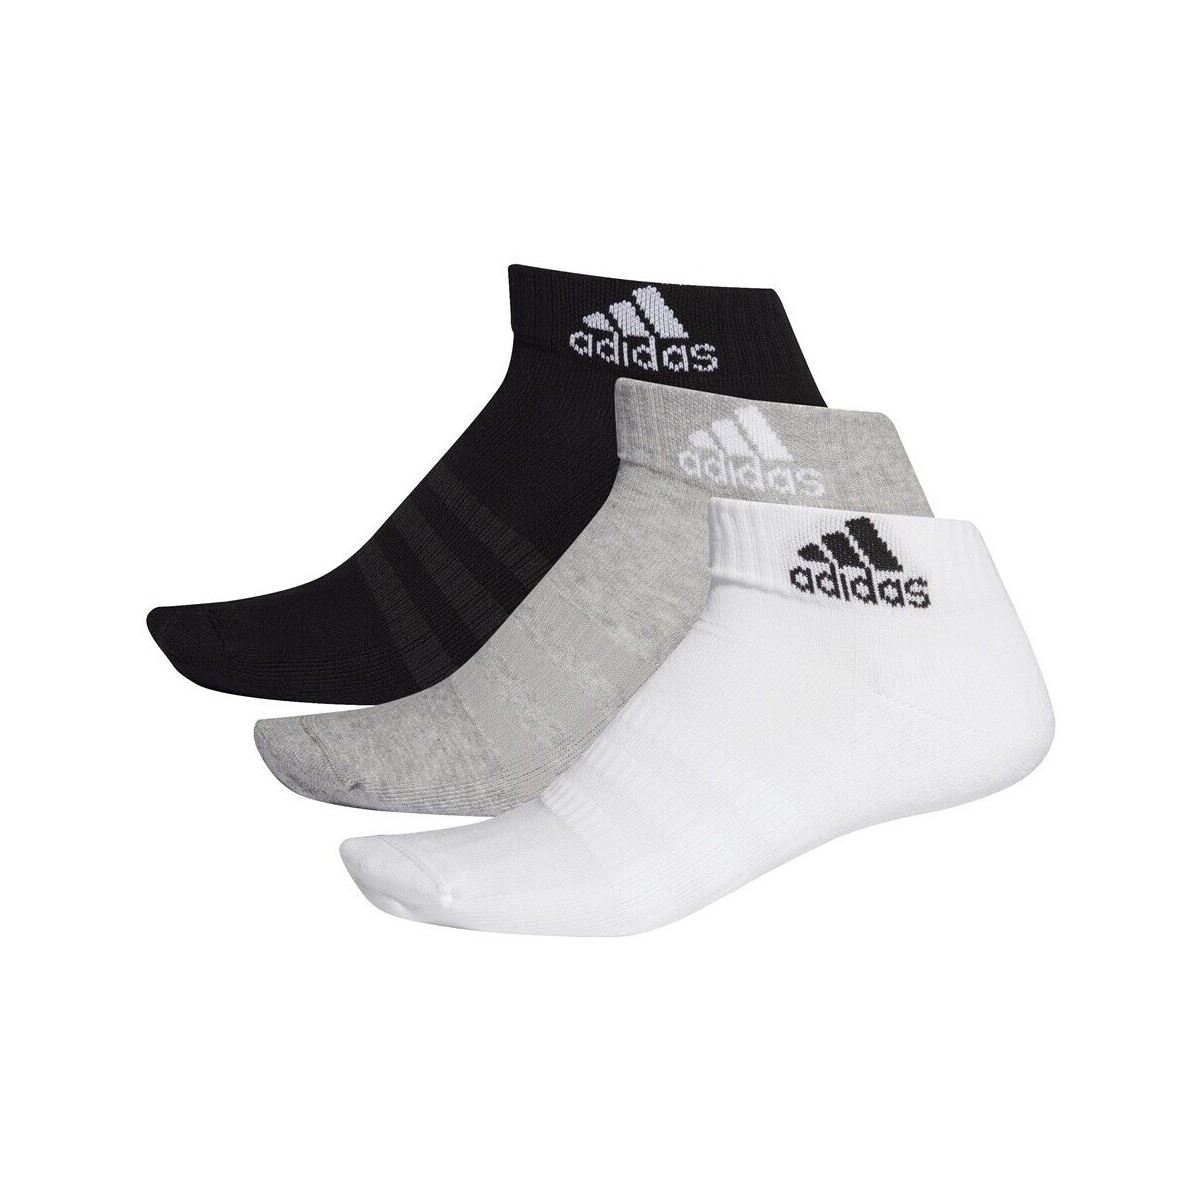 Unterwäsche Socken & Strümpfe adidas Originals 3PP Mix Weiß, Schwarz, Grau